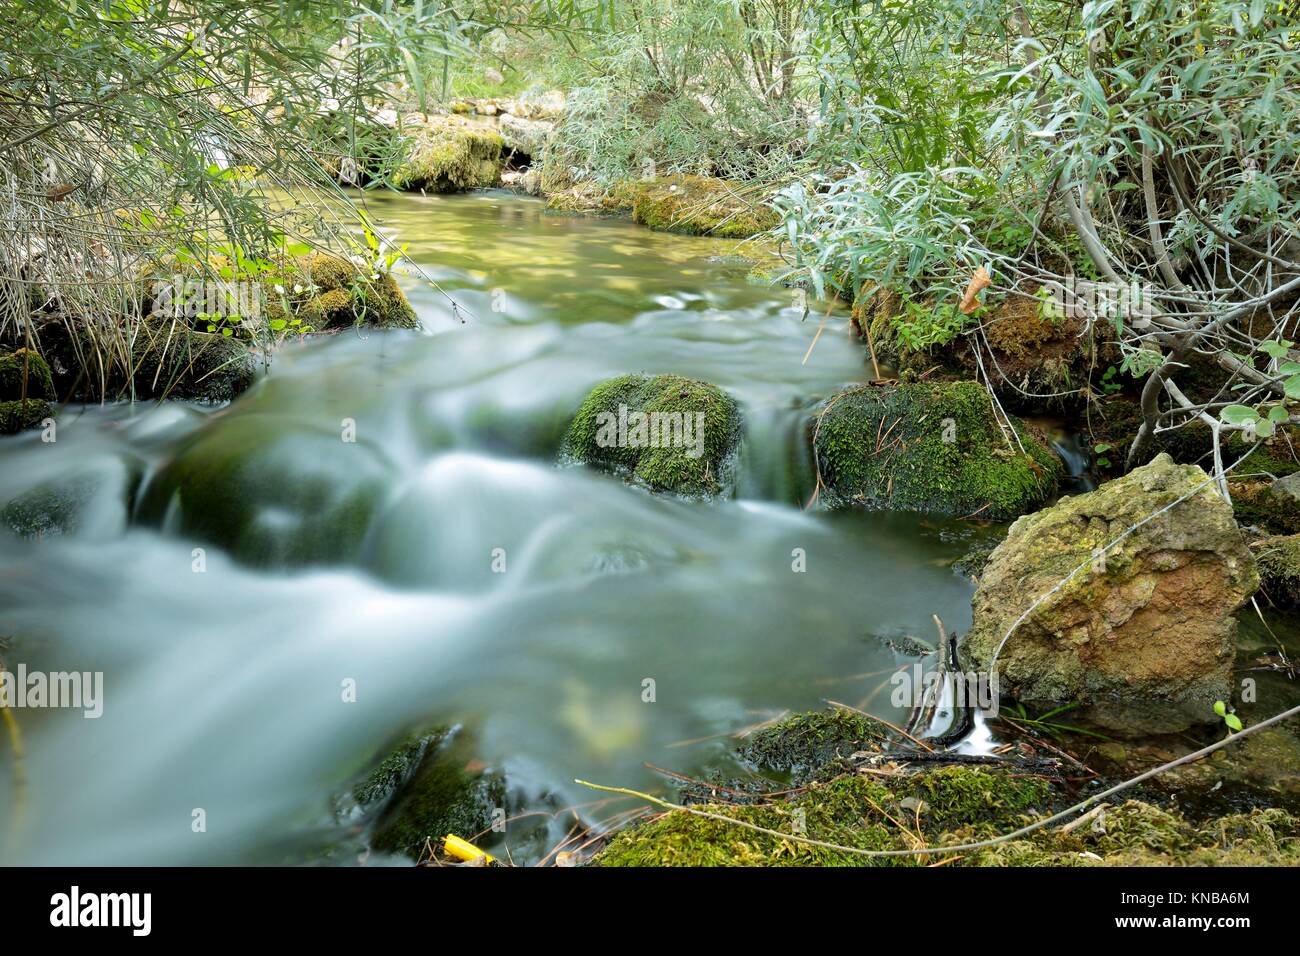 Wood River im Sommer, vorbei an den Munipal Begriff von Paterna del Madera, Albacete, Spanien. Horizontale Aufnahme mit Grüntönen. Stockfoto